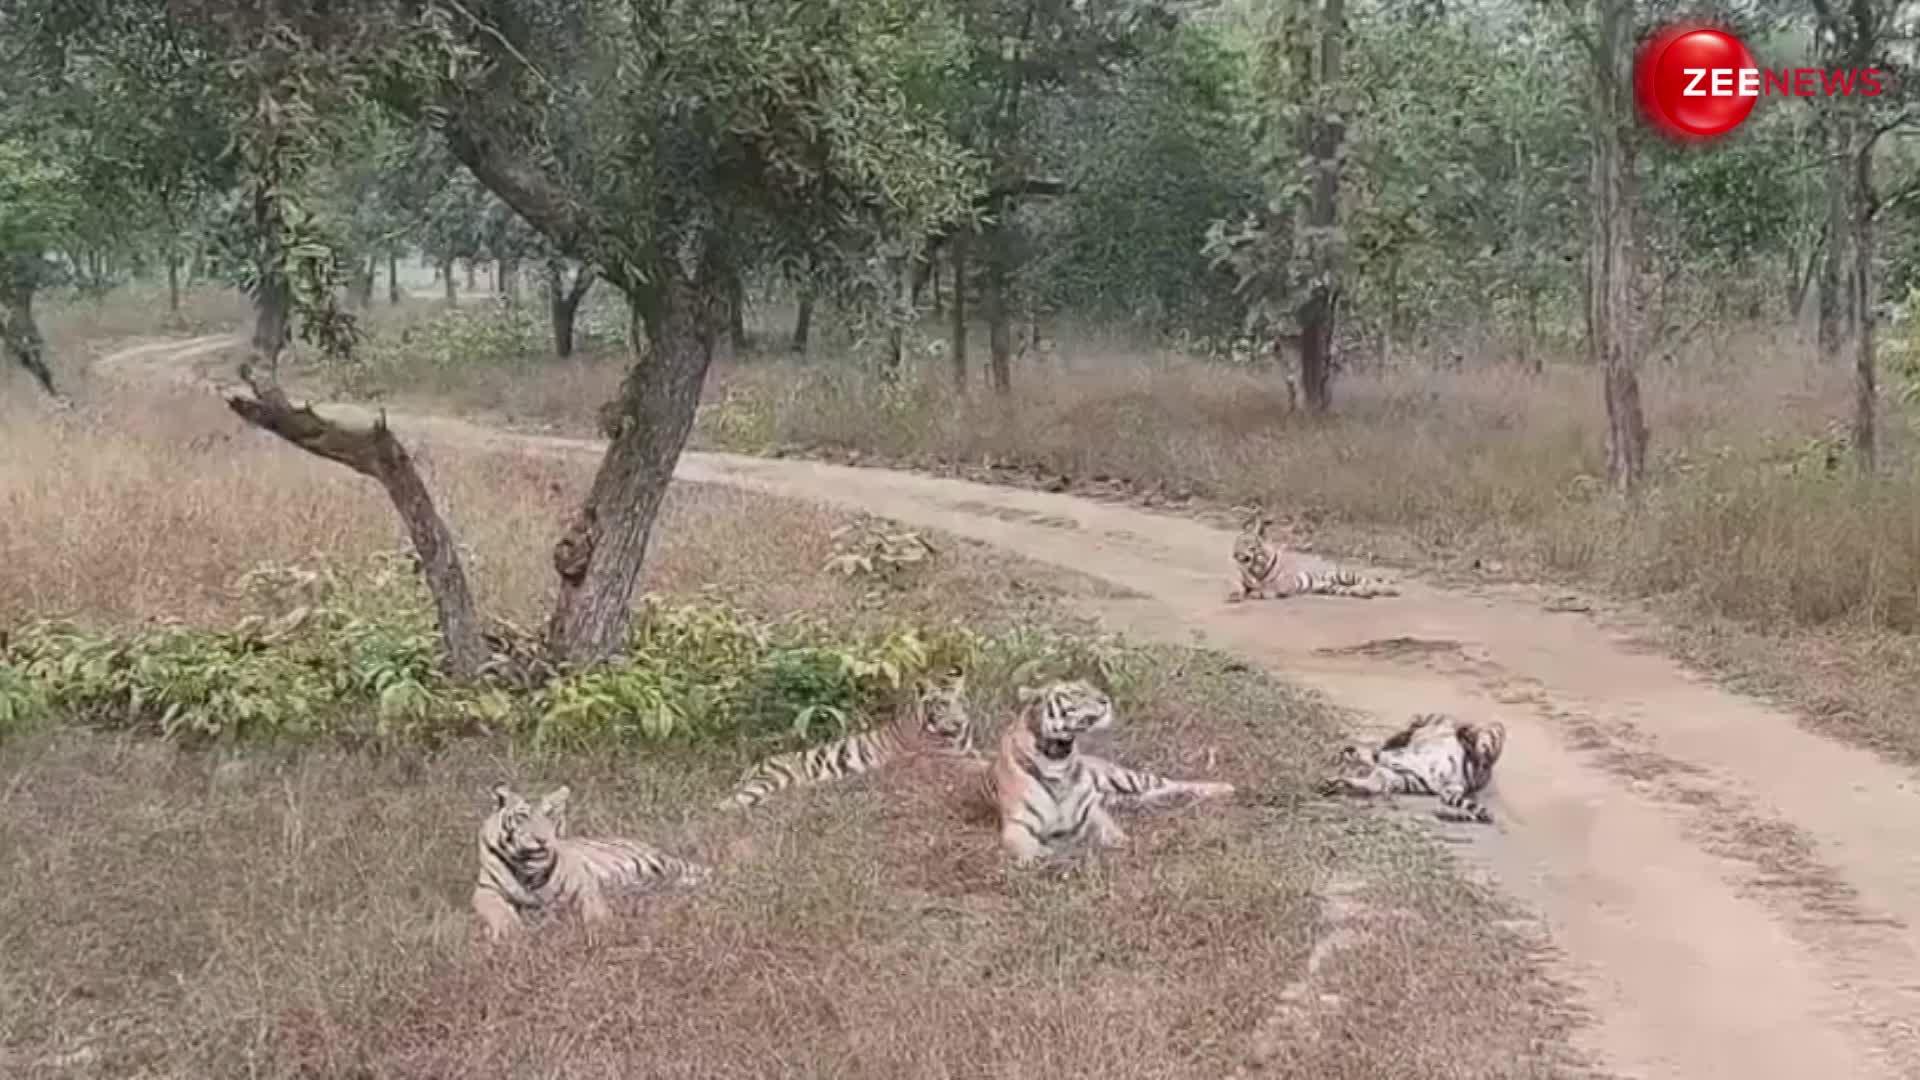 जंगल में एक साथ मस्ती करता दिखा बाघ का पूरा परिवार, लोगों को काफी पसंद आ रहा है वीडियो